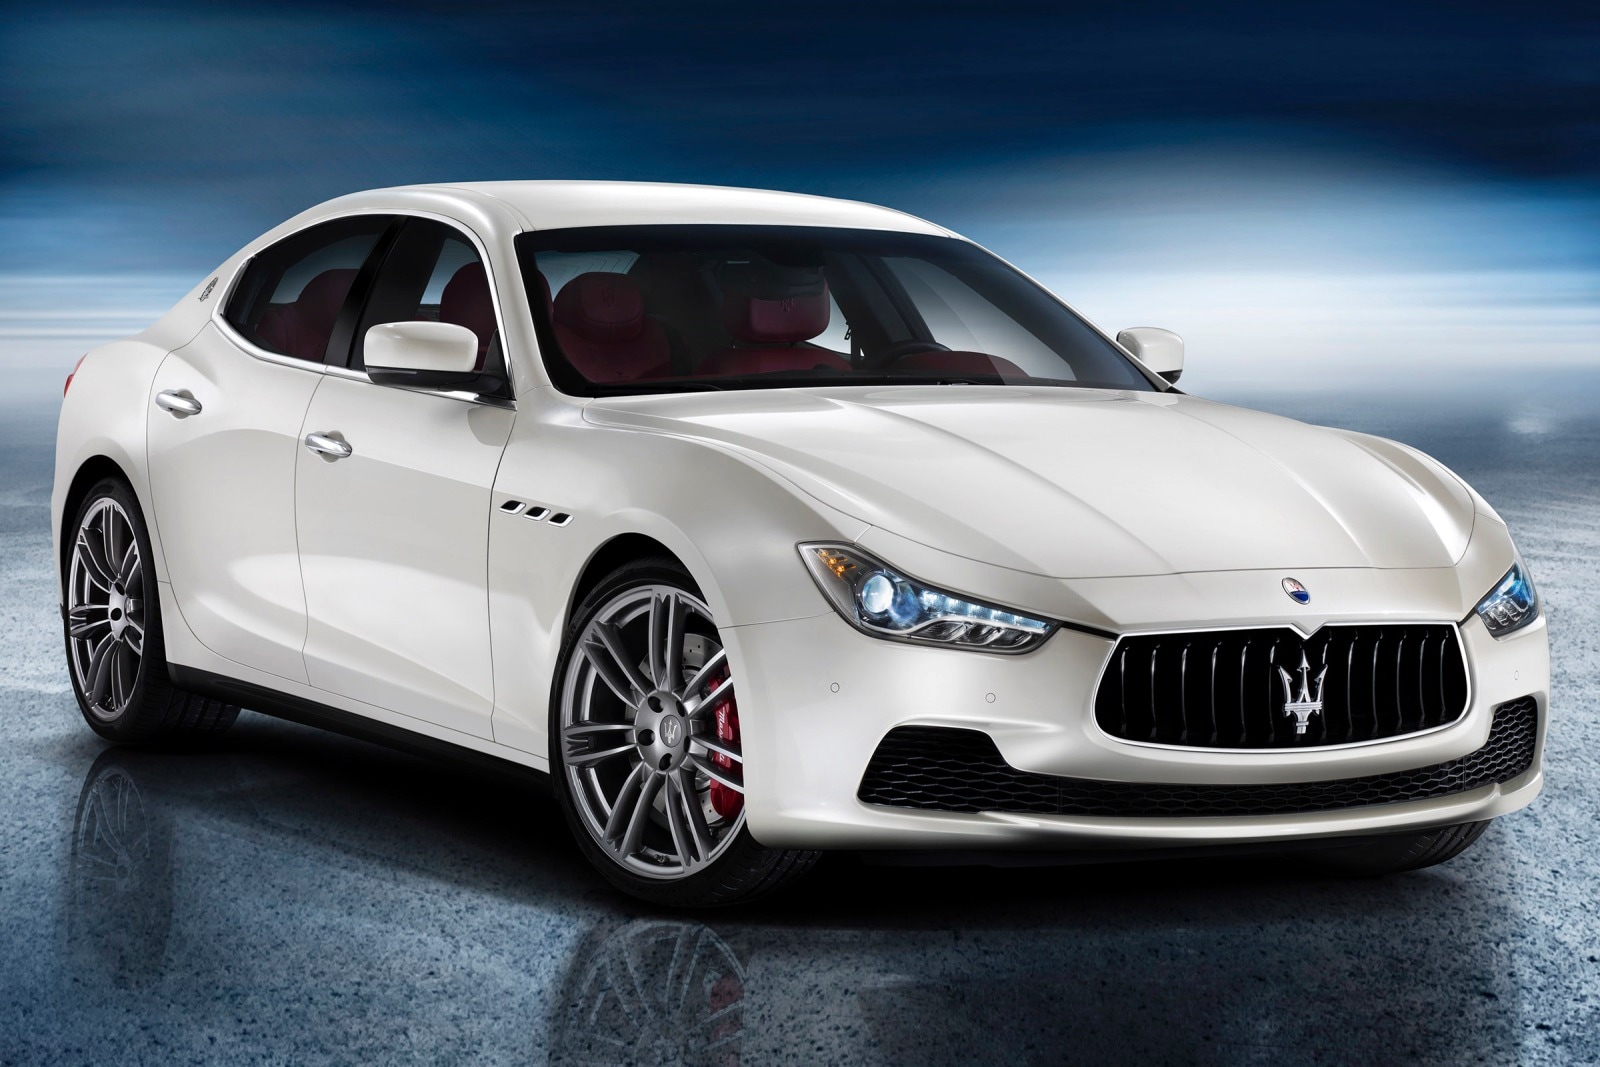 2014 Maserati Ghibli Review & Ratings | Edmunds